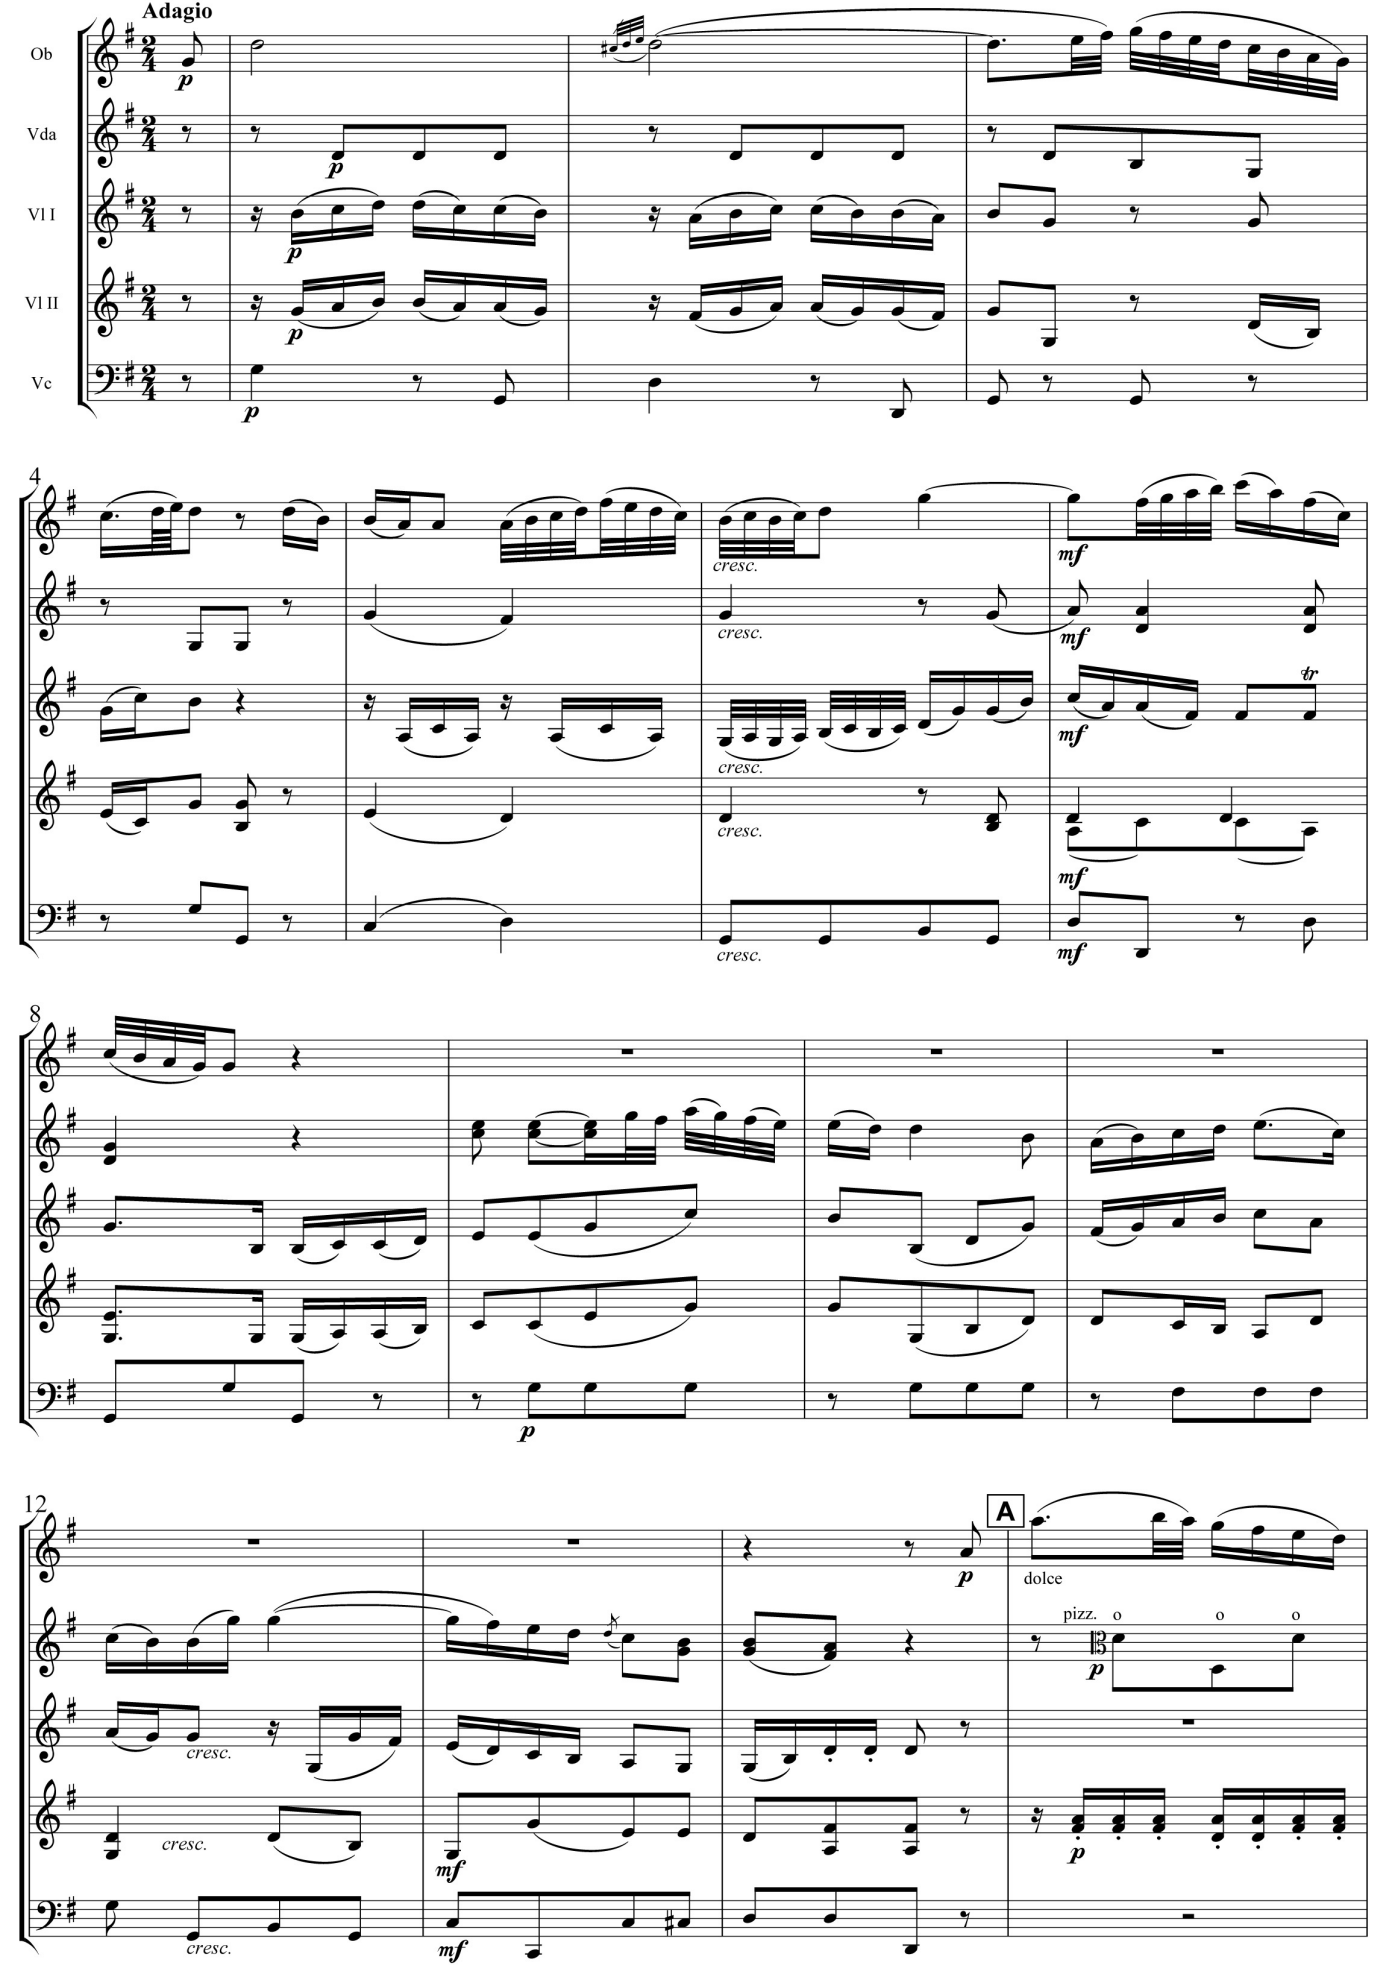 Franz Anton Hoffmeister Divertimento Re maggiore Oboe, Viola d'amore, due Violini e Violoncello